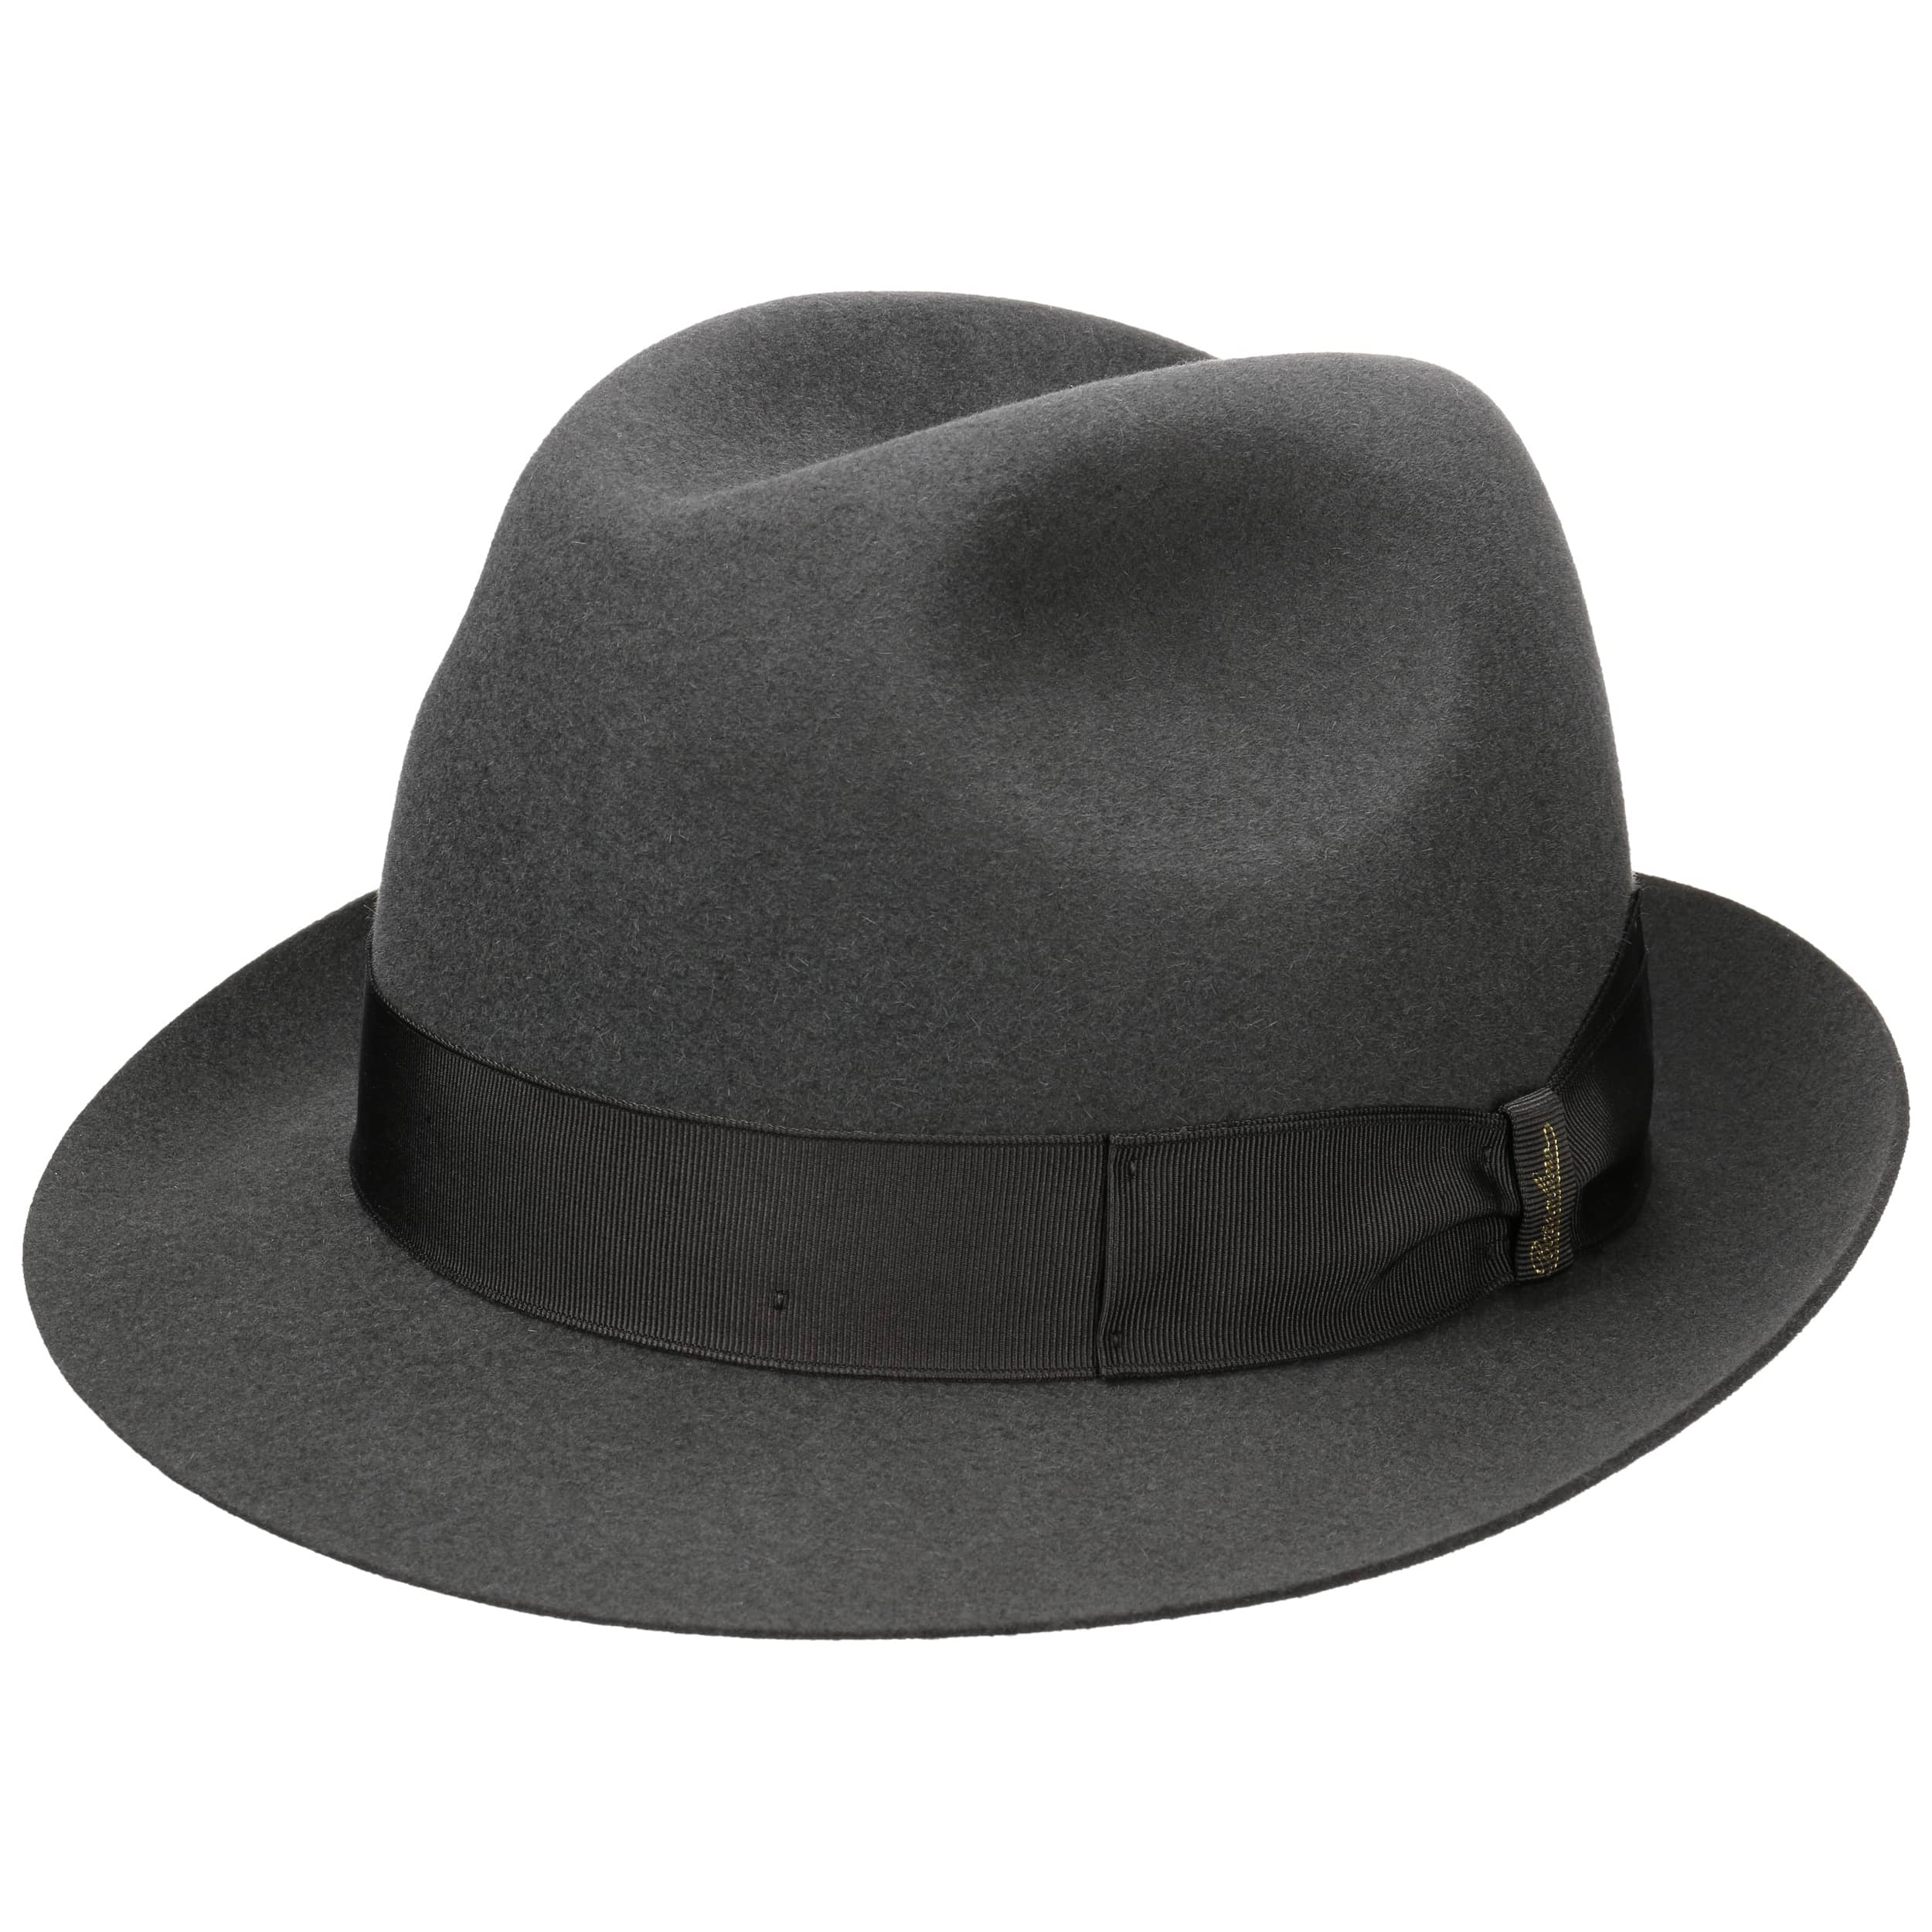 Borsalino Cappello Marengo Fedora ala 6,5 cm sfoderato grigio scuro